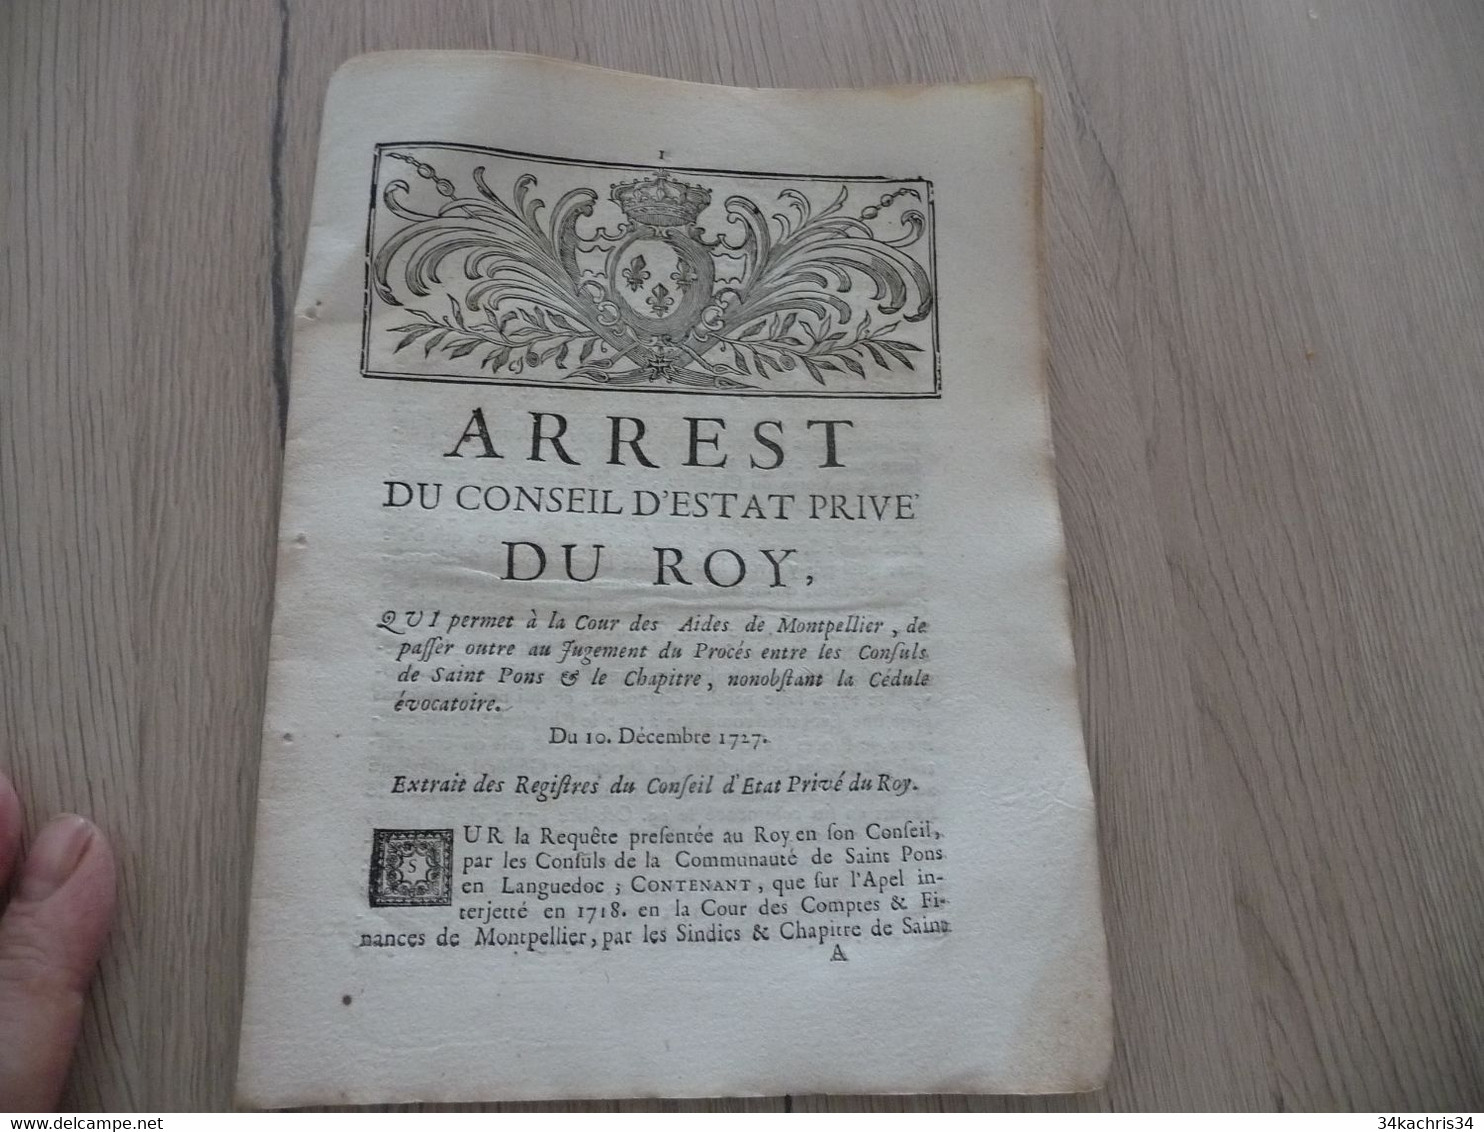 Arrest Du Conseil D''Etat Du Roi 10/12/1727 Permission Cours Des Aides De Montpellier De Passer Outre.... - Décrets & Lois